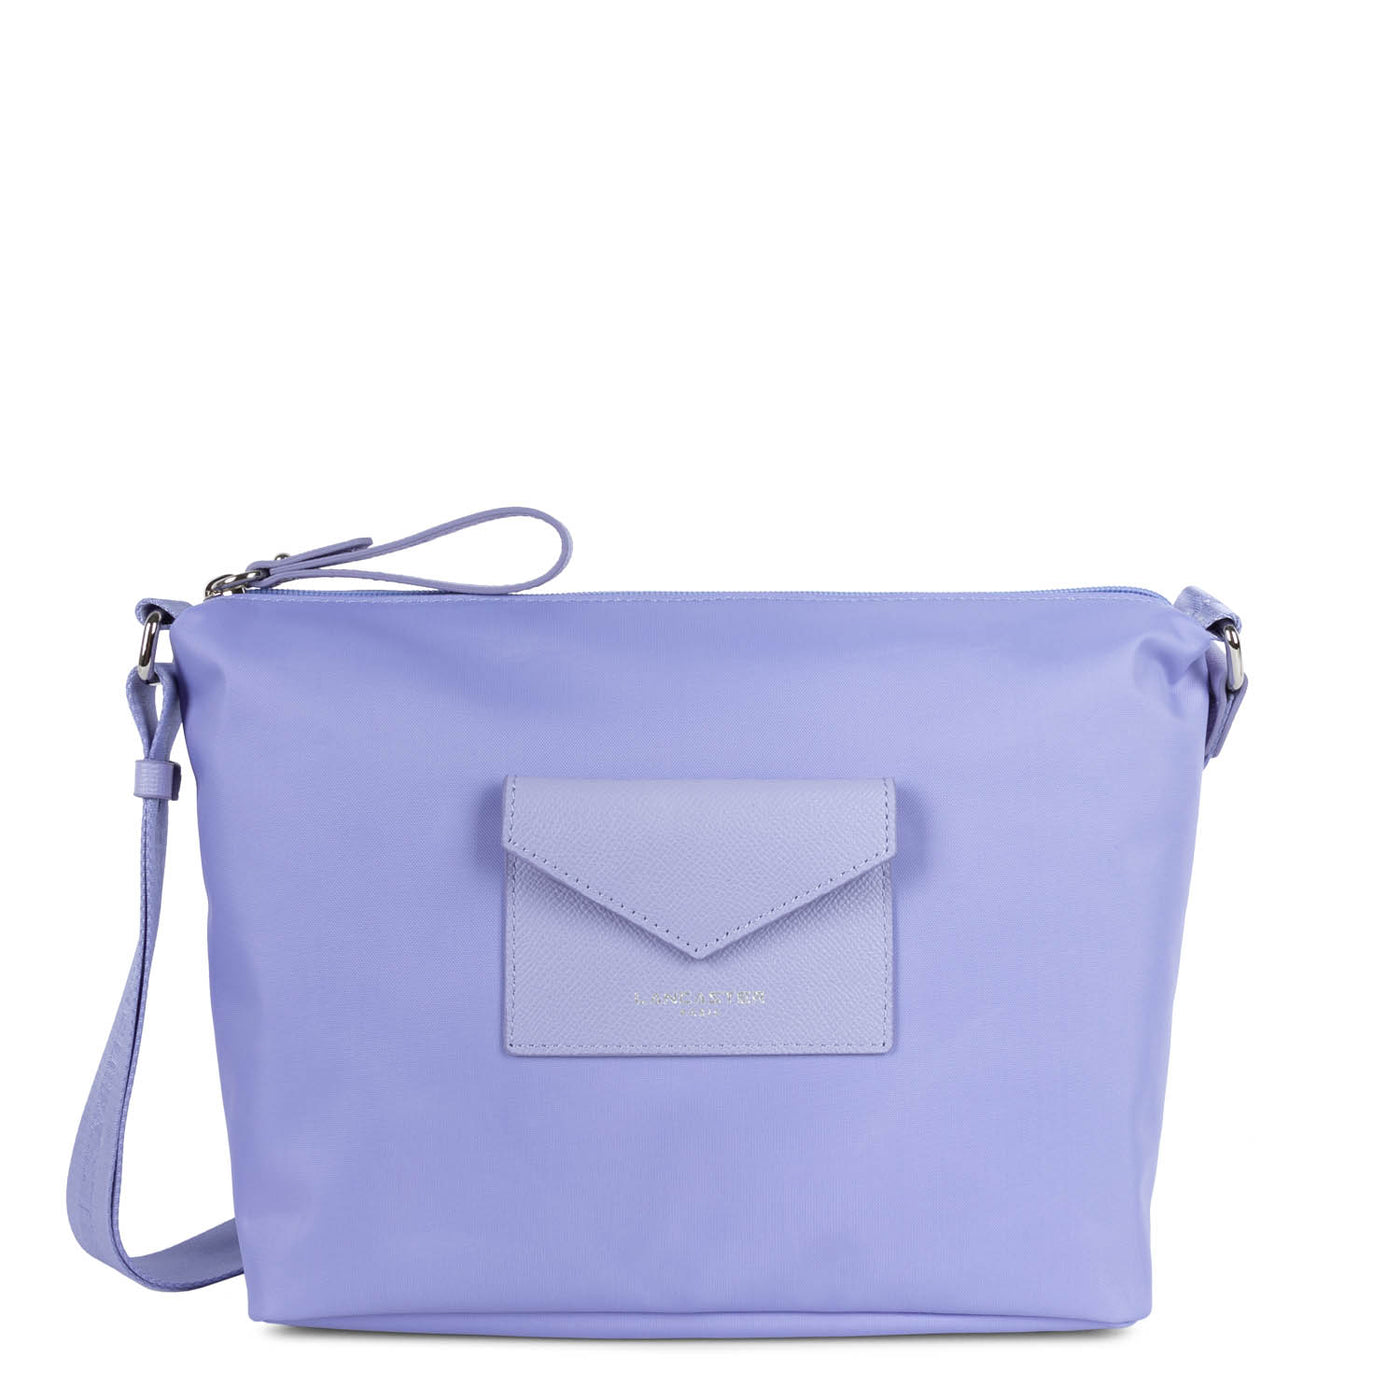 shoulder bag - smart kba #couleur_lavande